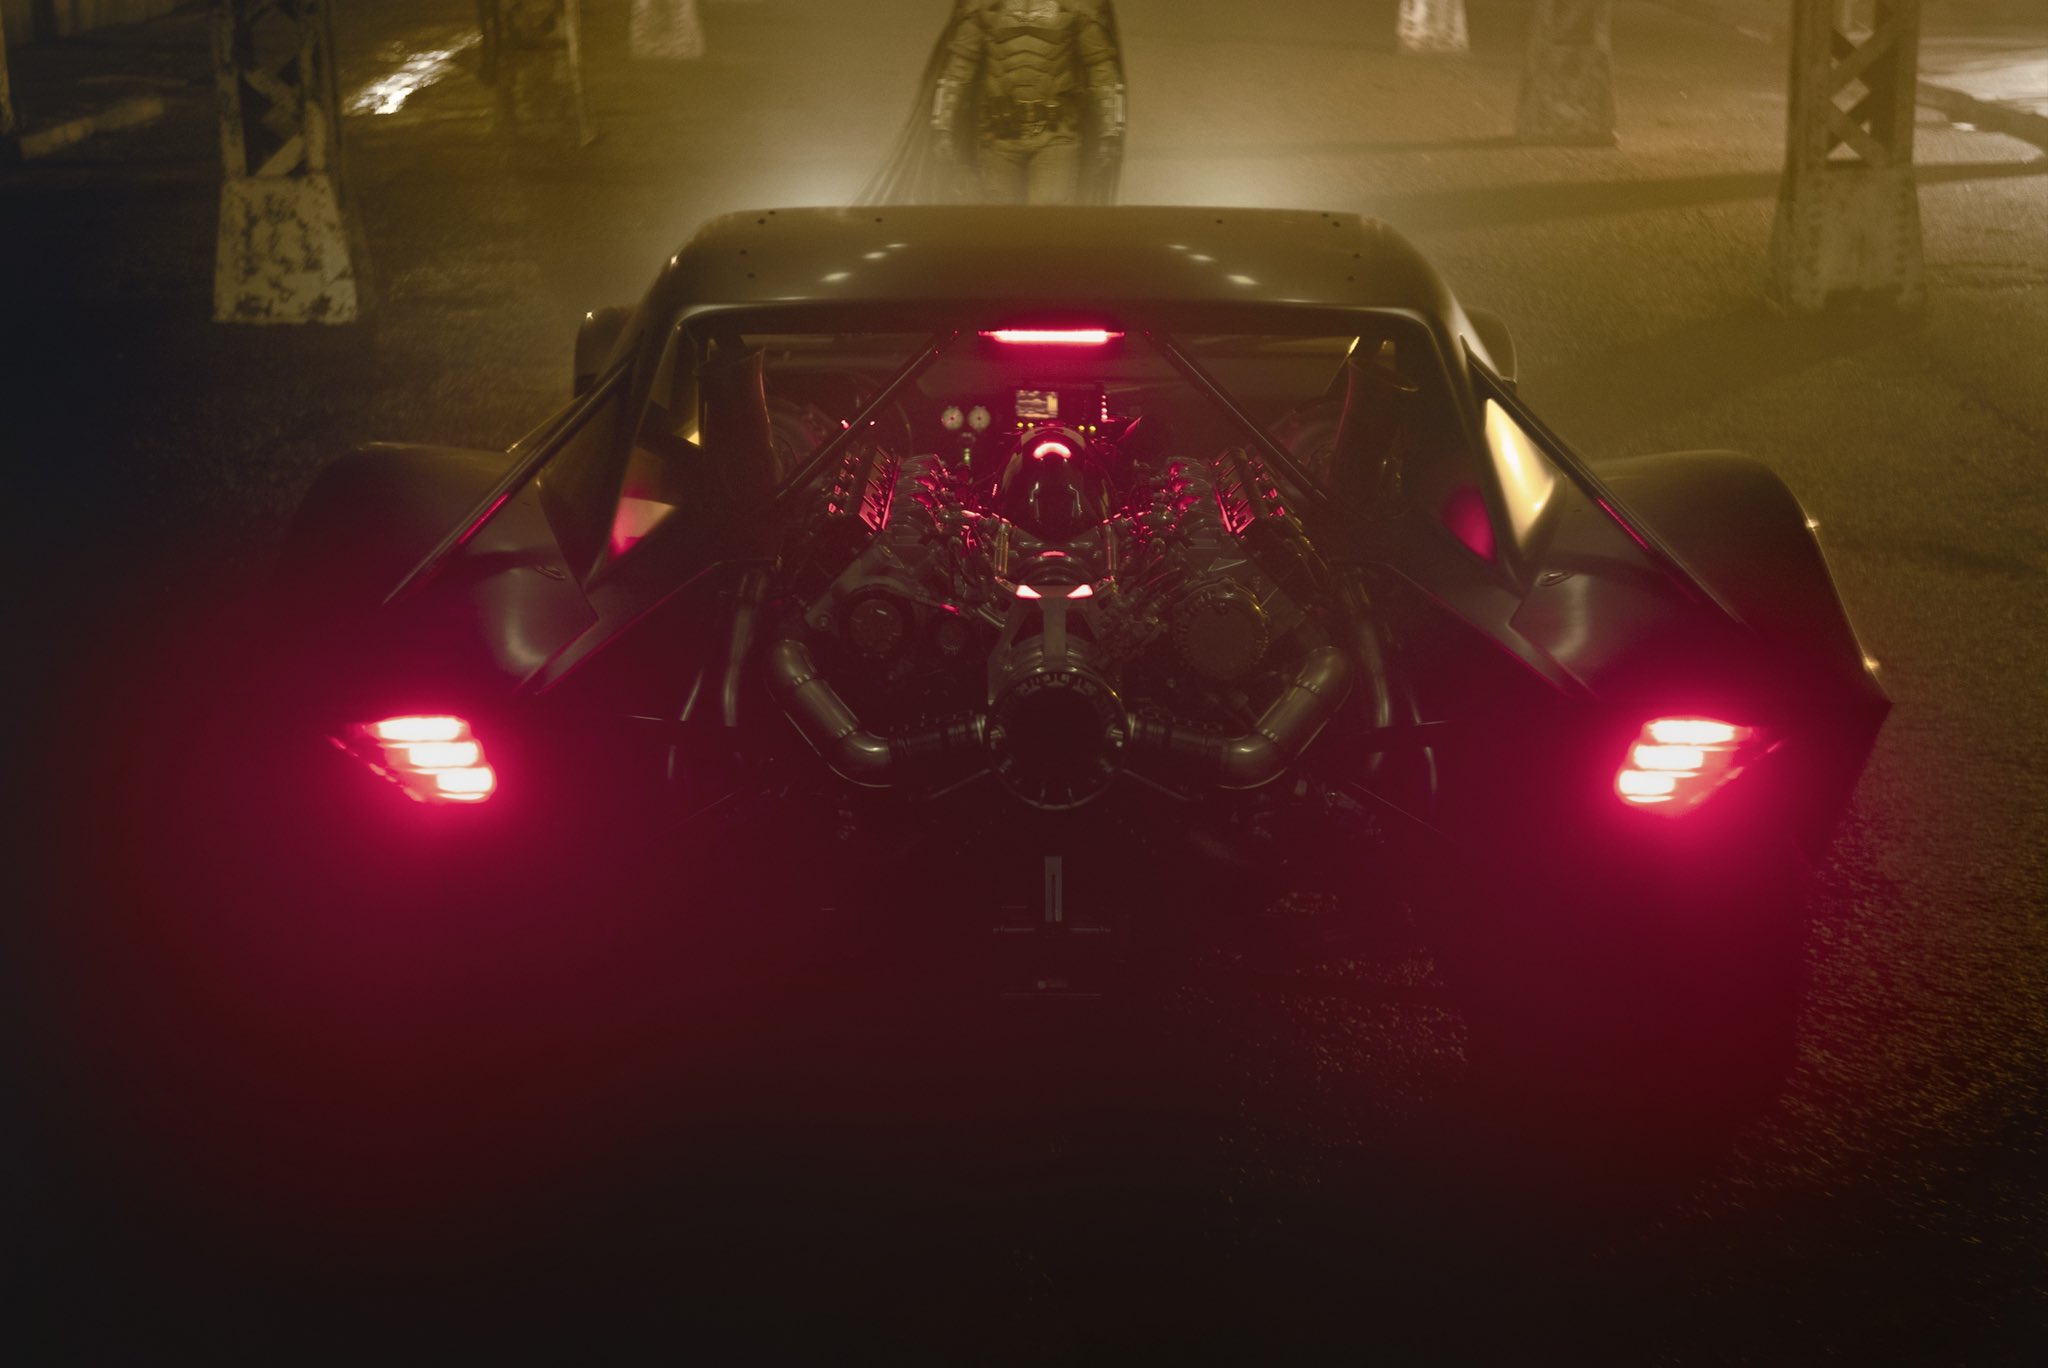 Batmobile Engine The Batman C2 Corvette Movie Muscle Car